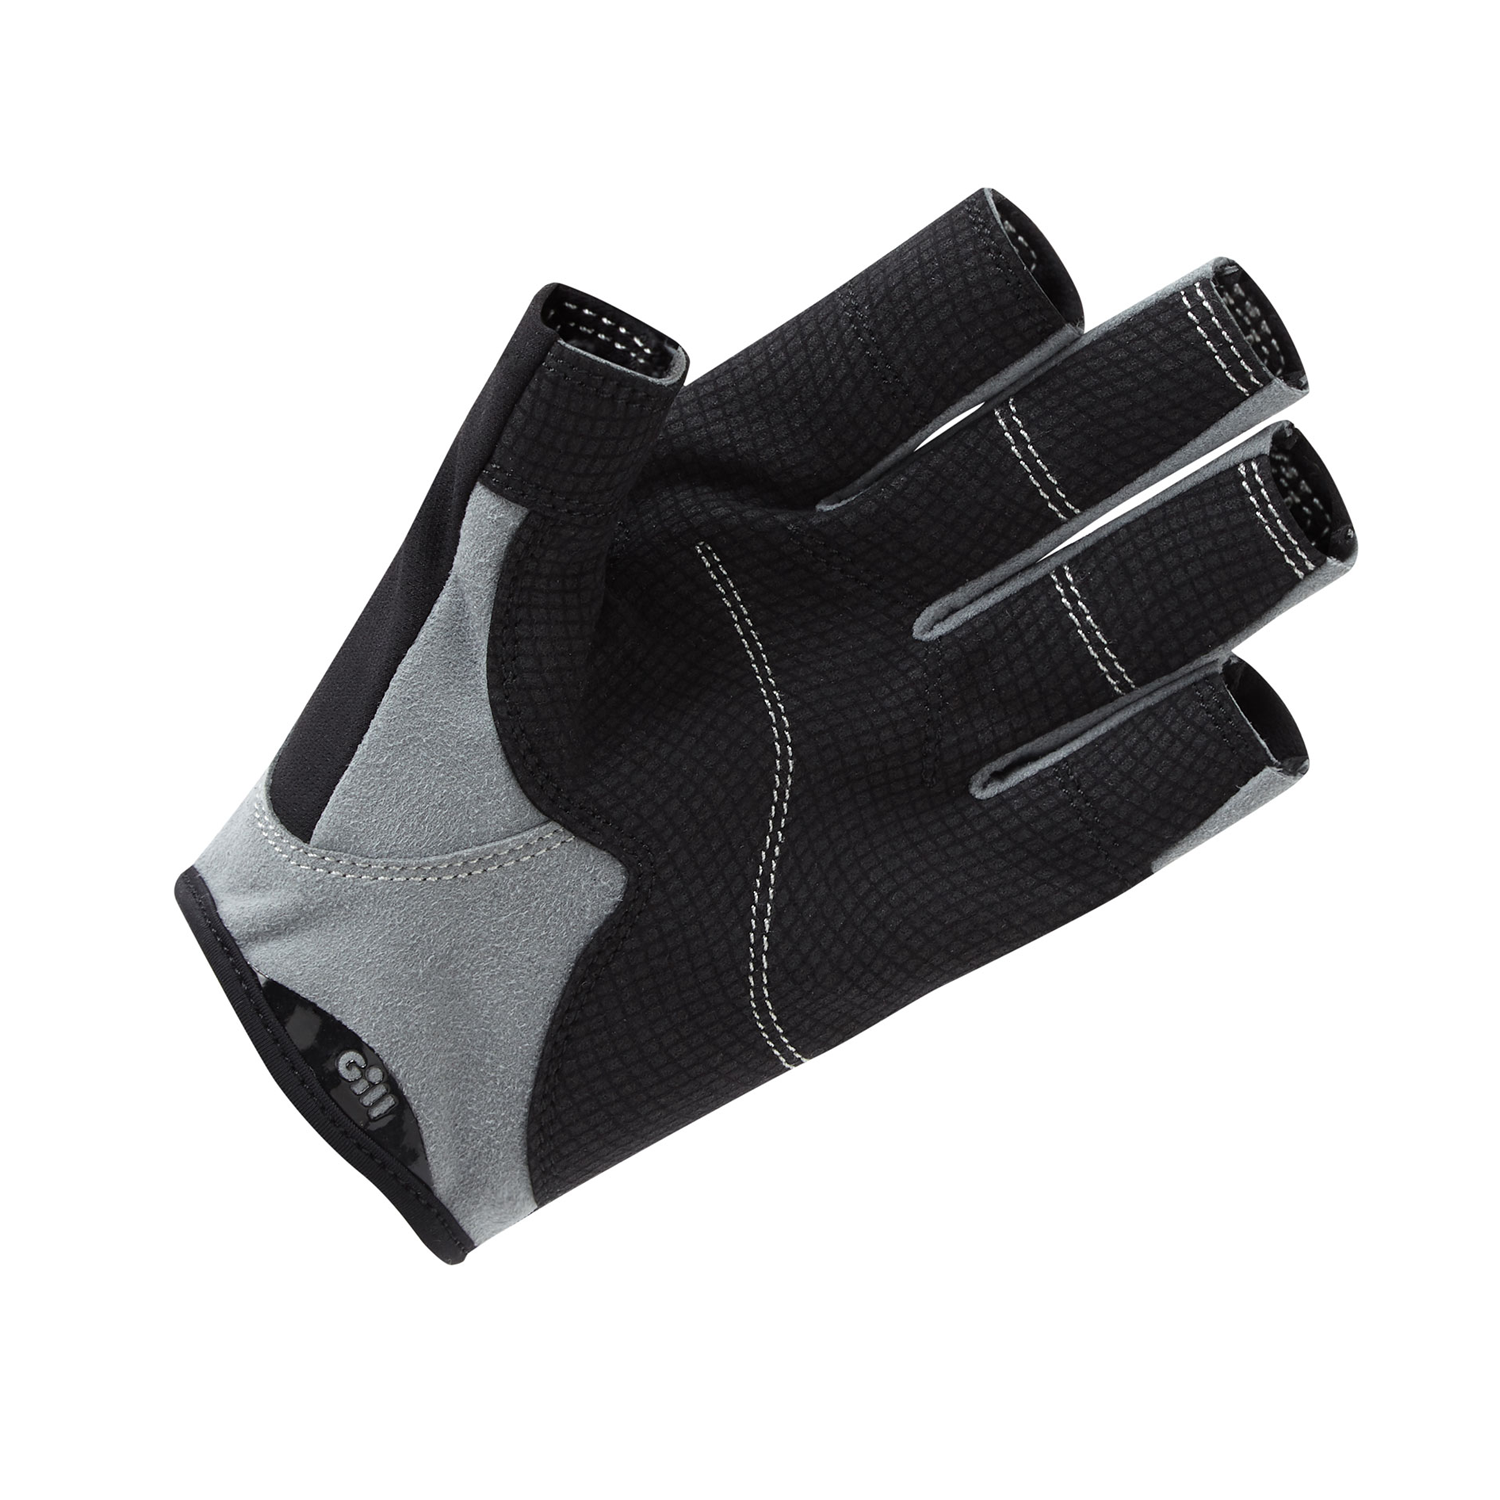 Deckhand Gloves Short Finger Black